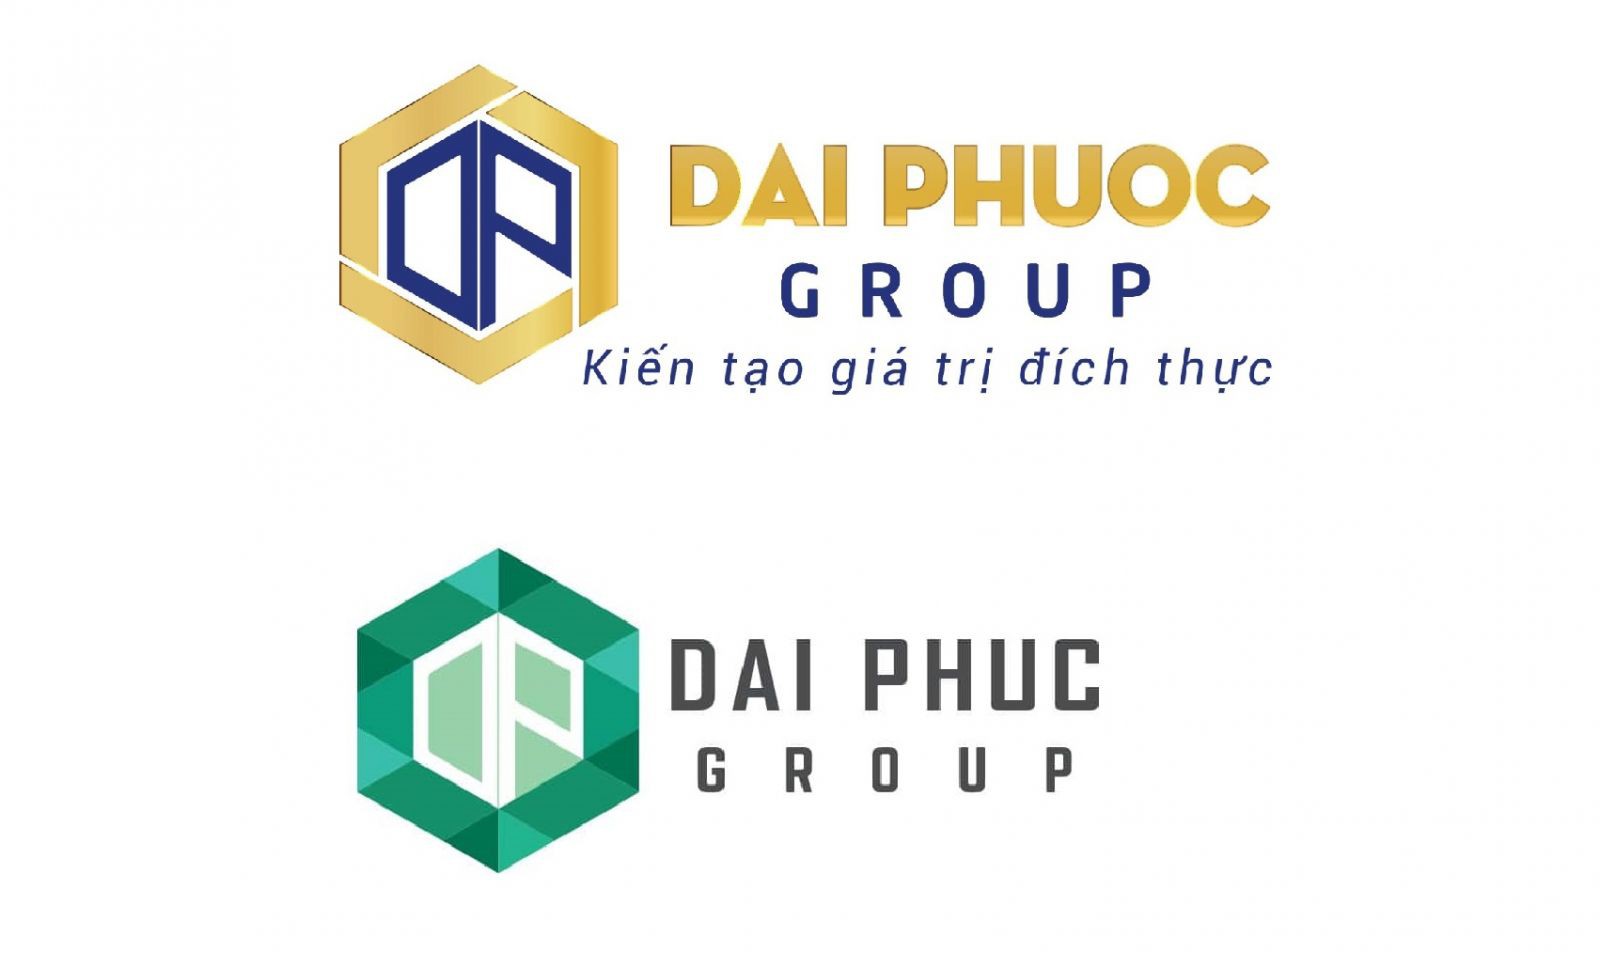 dai-phuoc-group-nhai-logo-dai-phuc1-1619681203.jpg